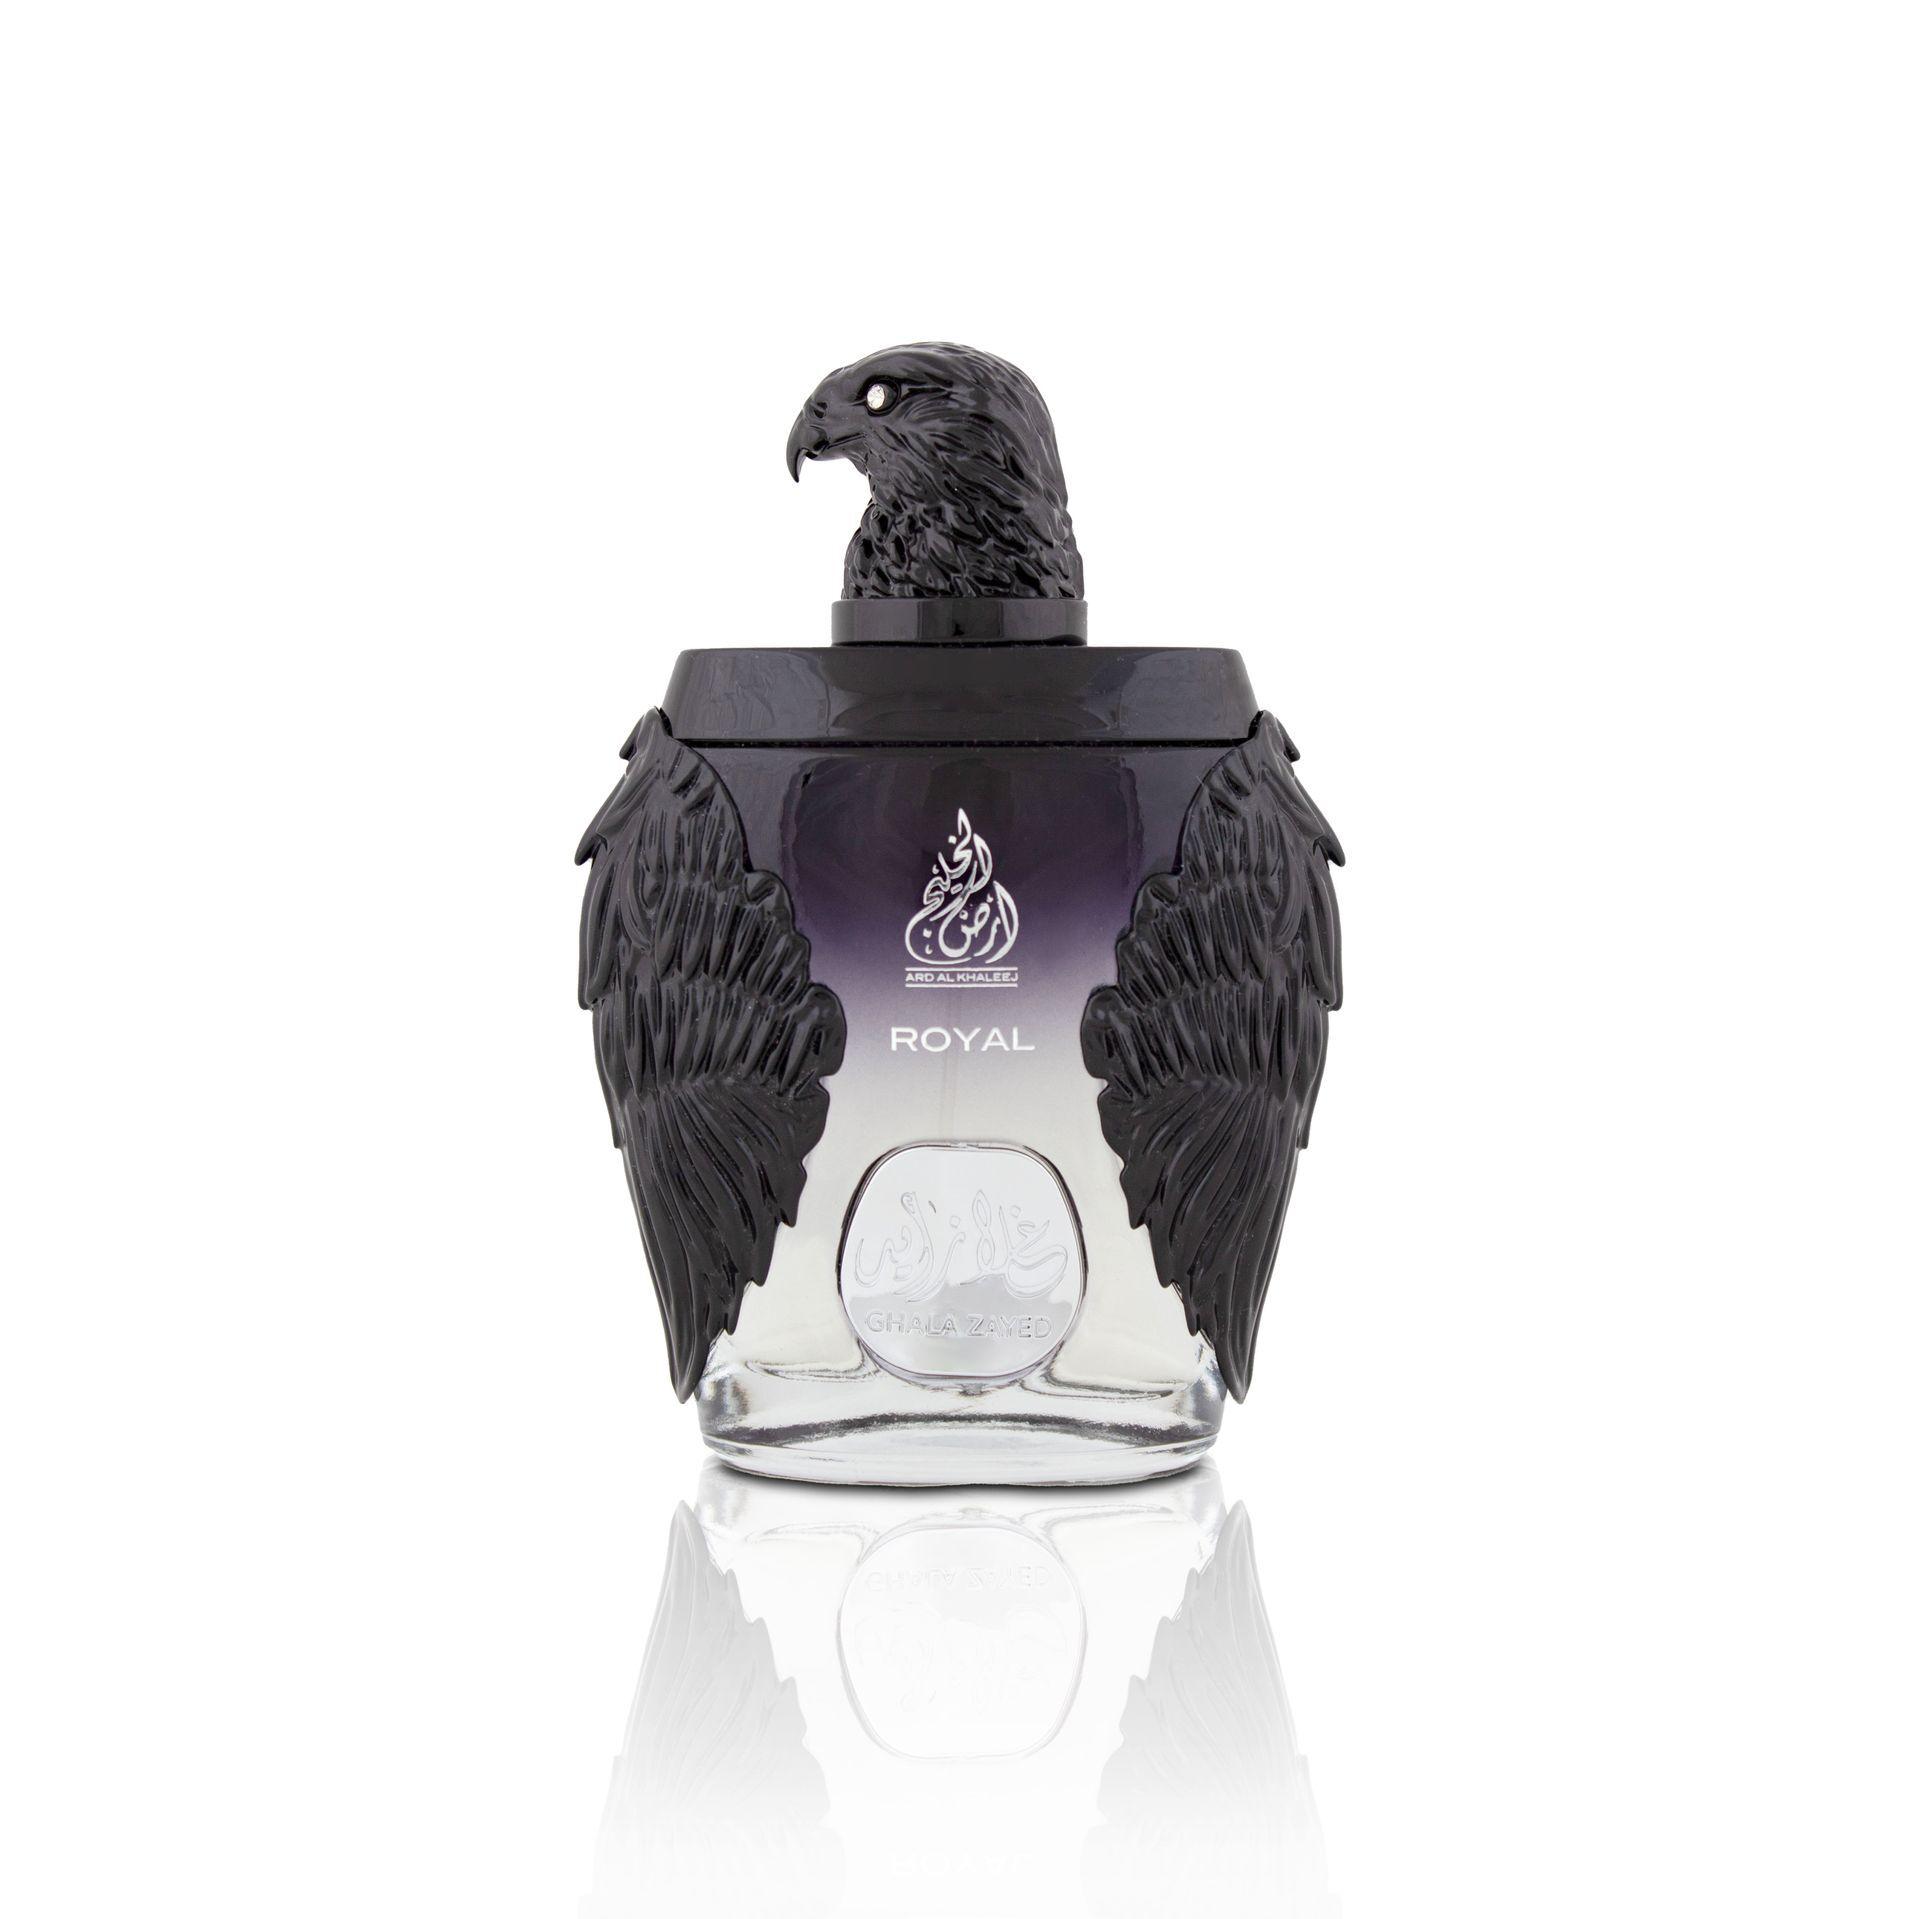 Ghala Zayed Luxury Royal Perfume / Eau De Parfum 100Ml By Ard Al Khaleej